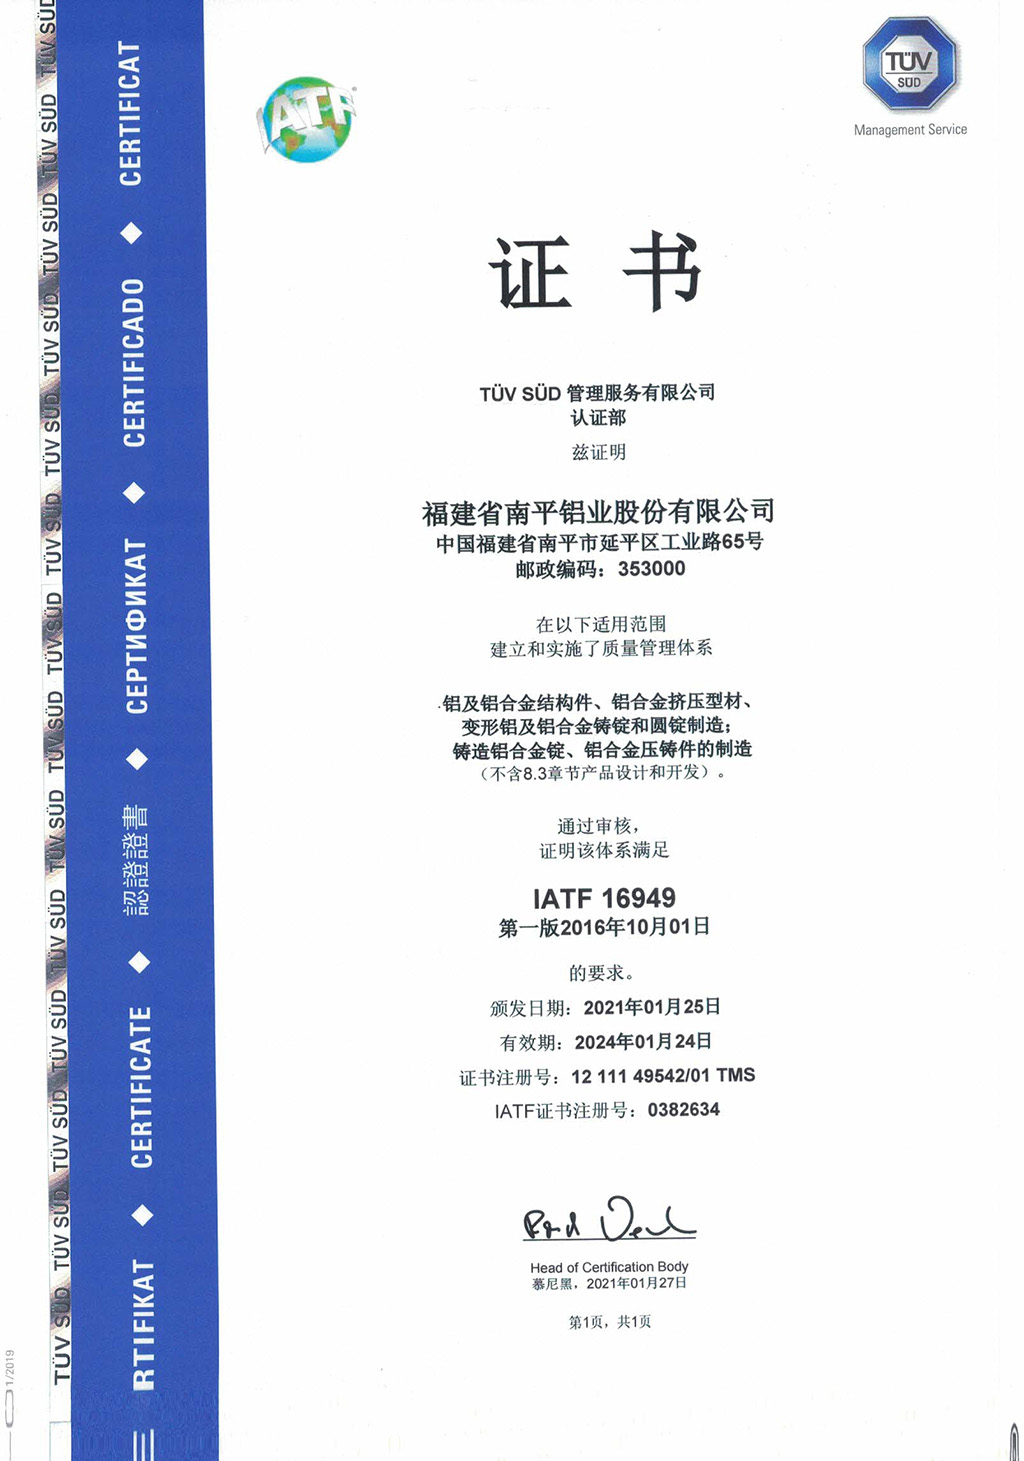 IATF16949汽车质量体系证书中文版.jpg